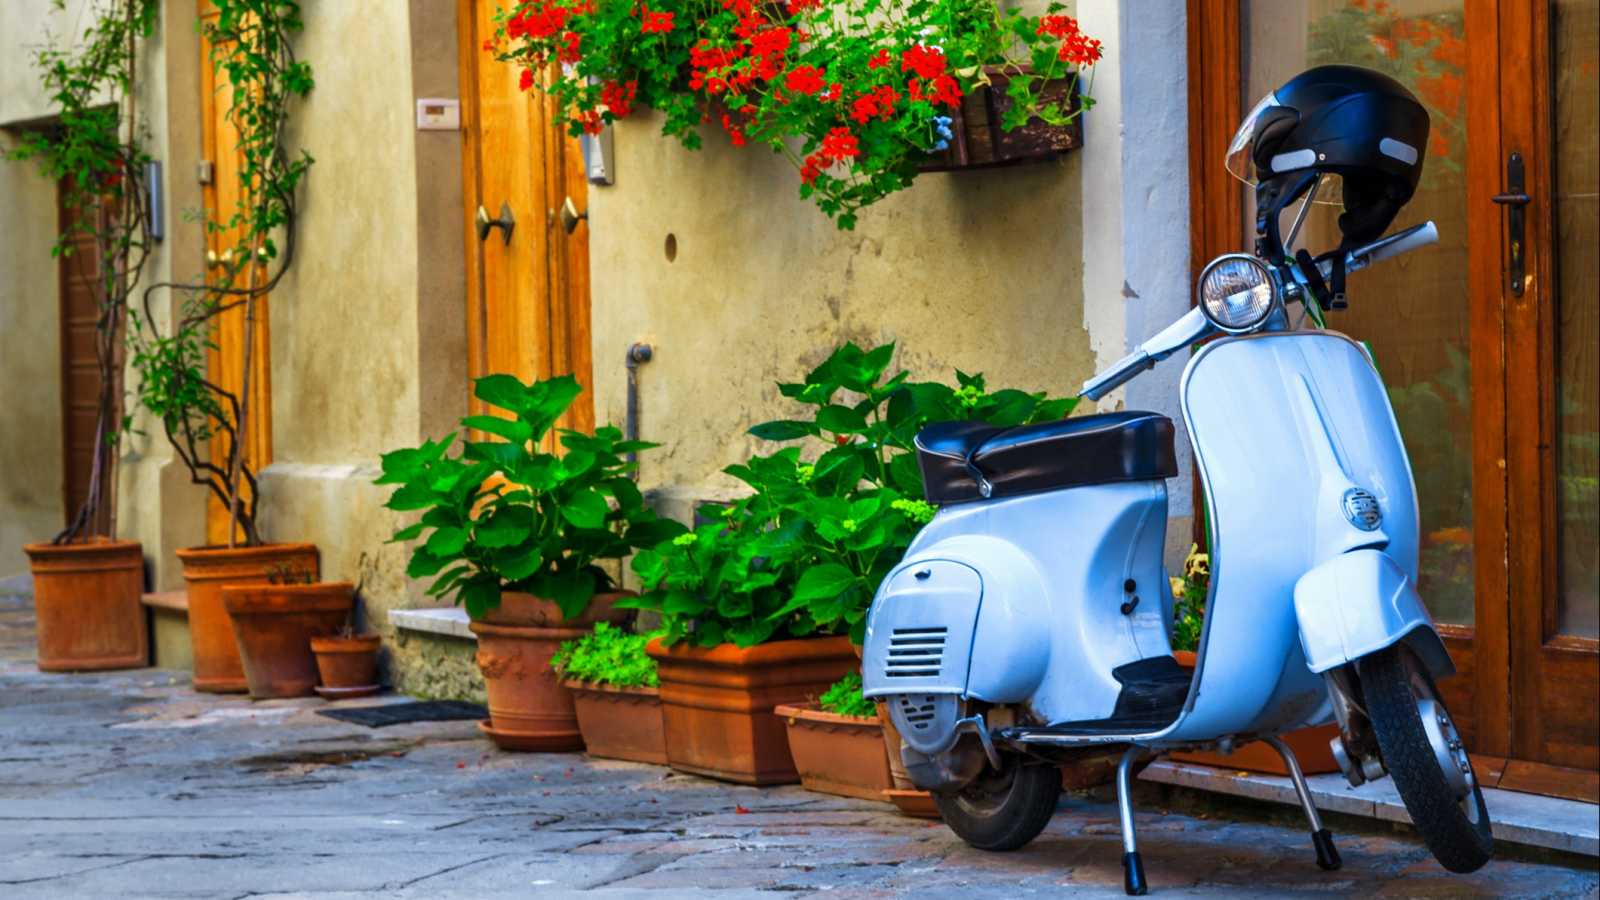 Wunderschöne, hübsch dekorierte Straße mit Blumen und rustikalem Eingang, altmodischer Motorroller in einer typischen italienischen Straße, Pienza, Toskana,